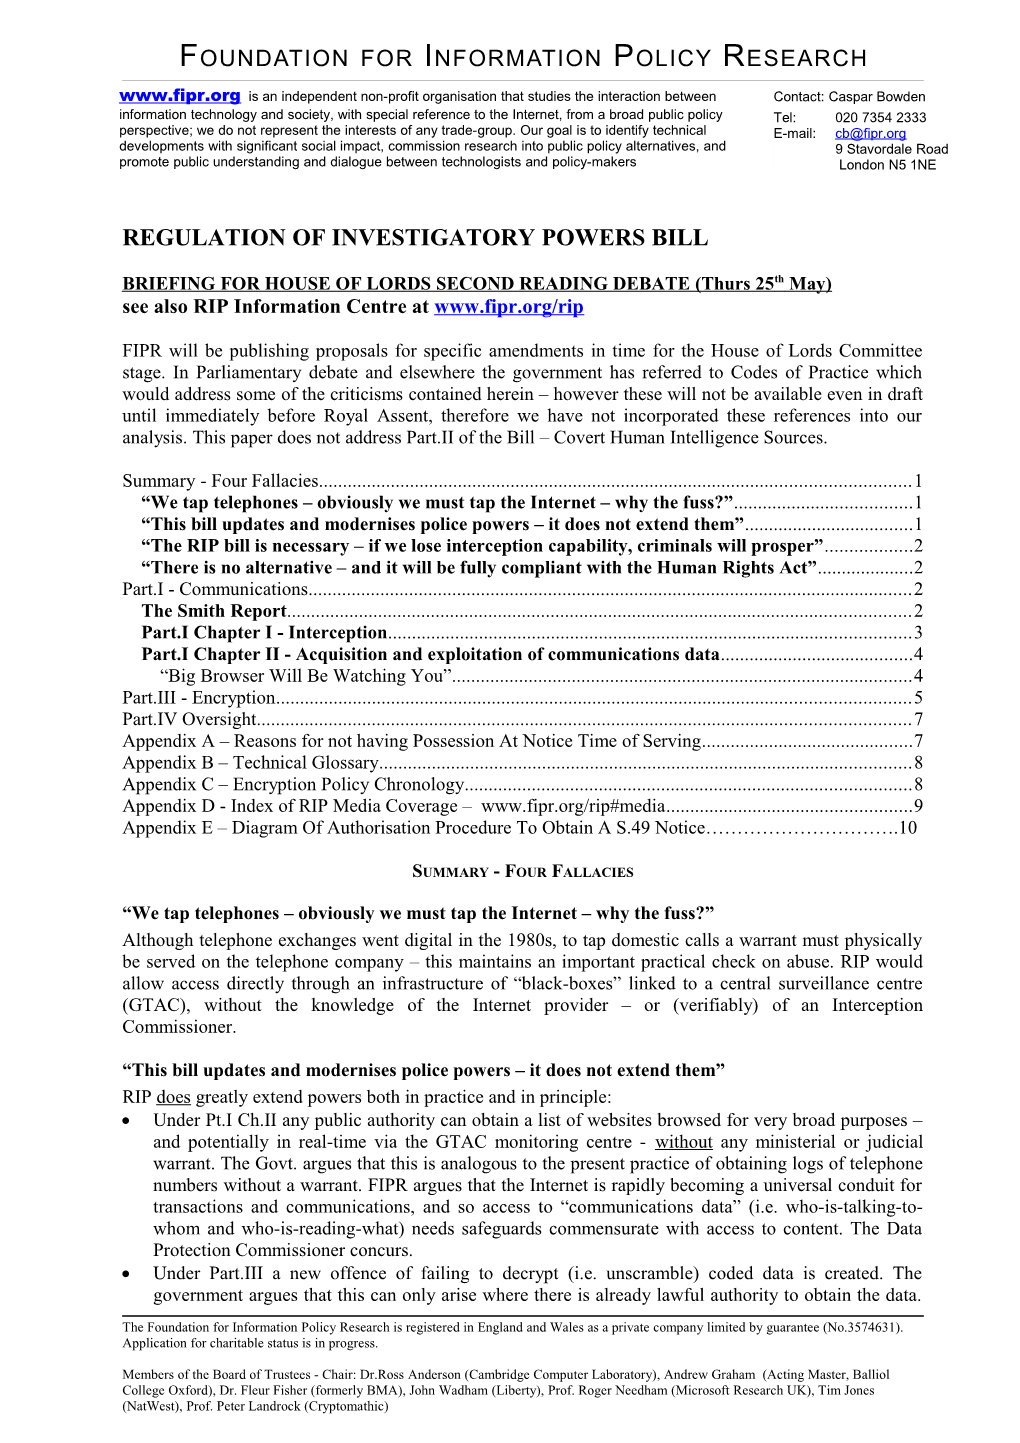 Regulation of Investigatory Powers Bill